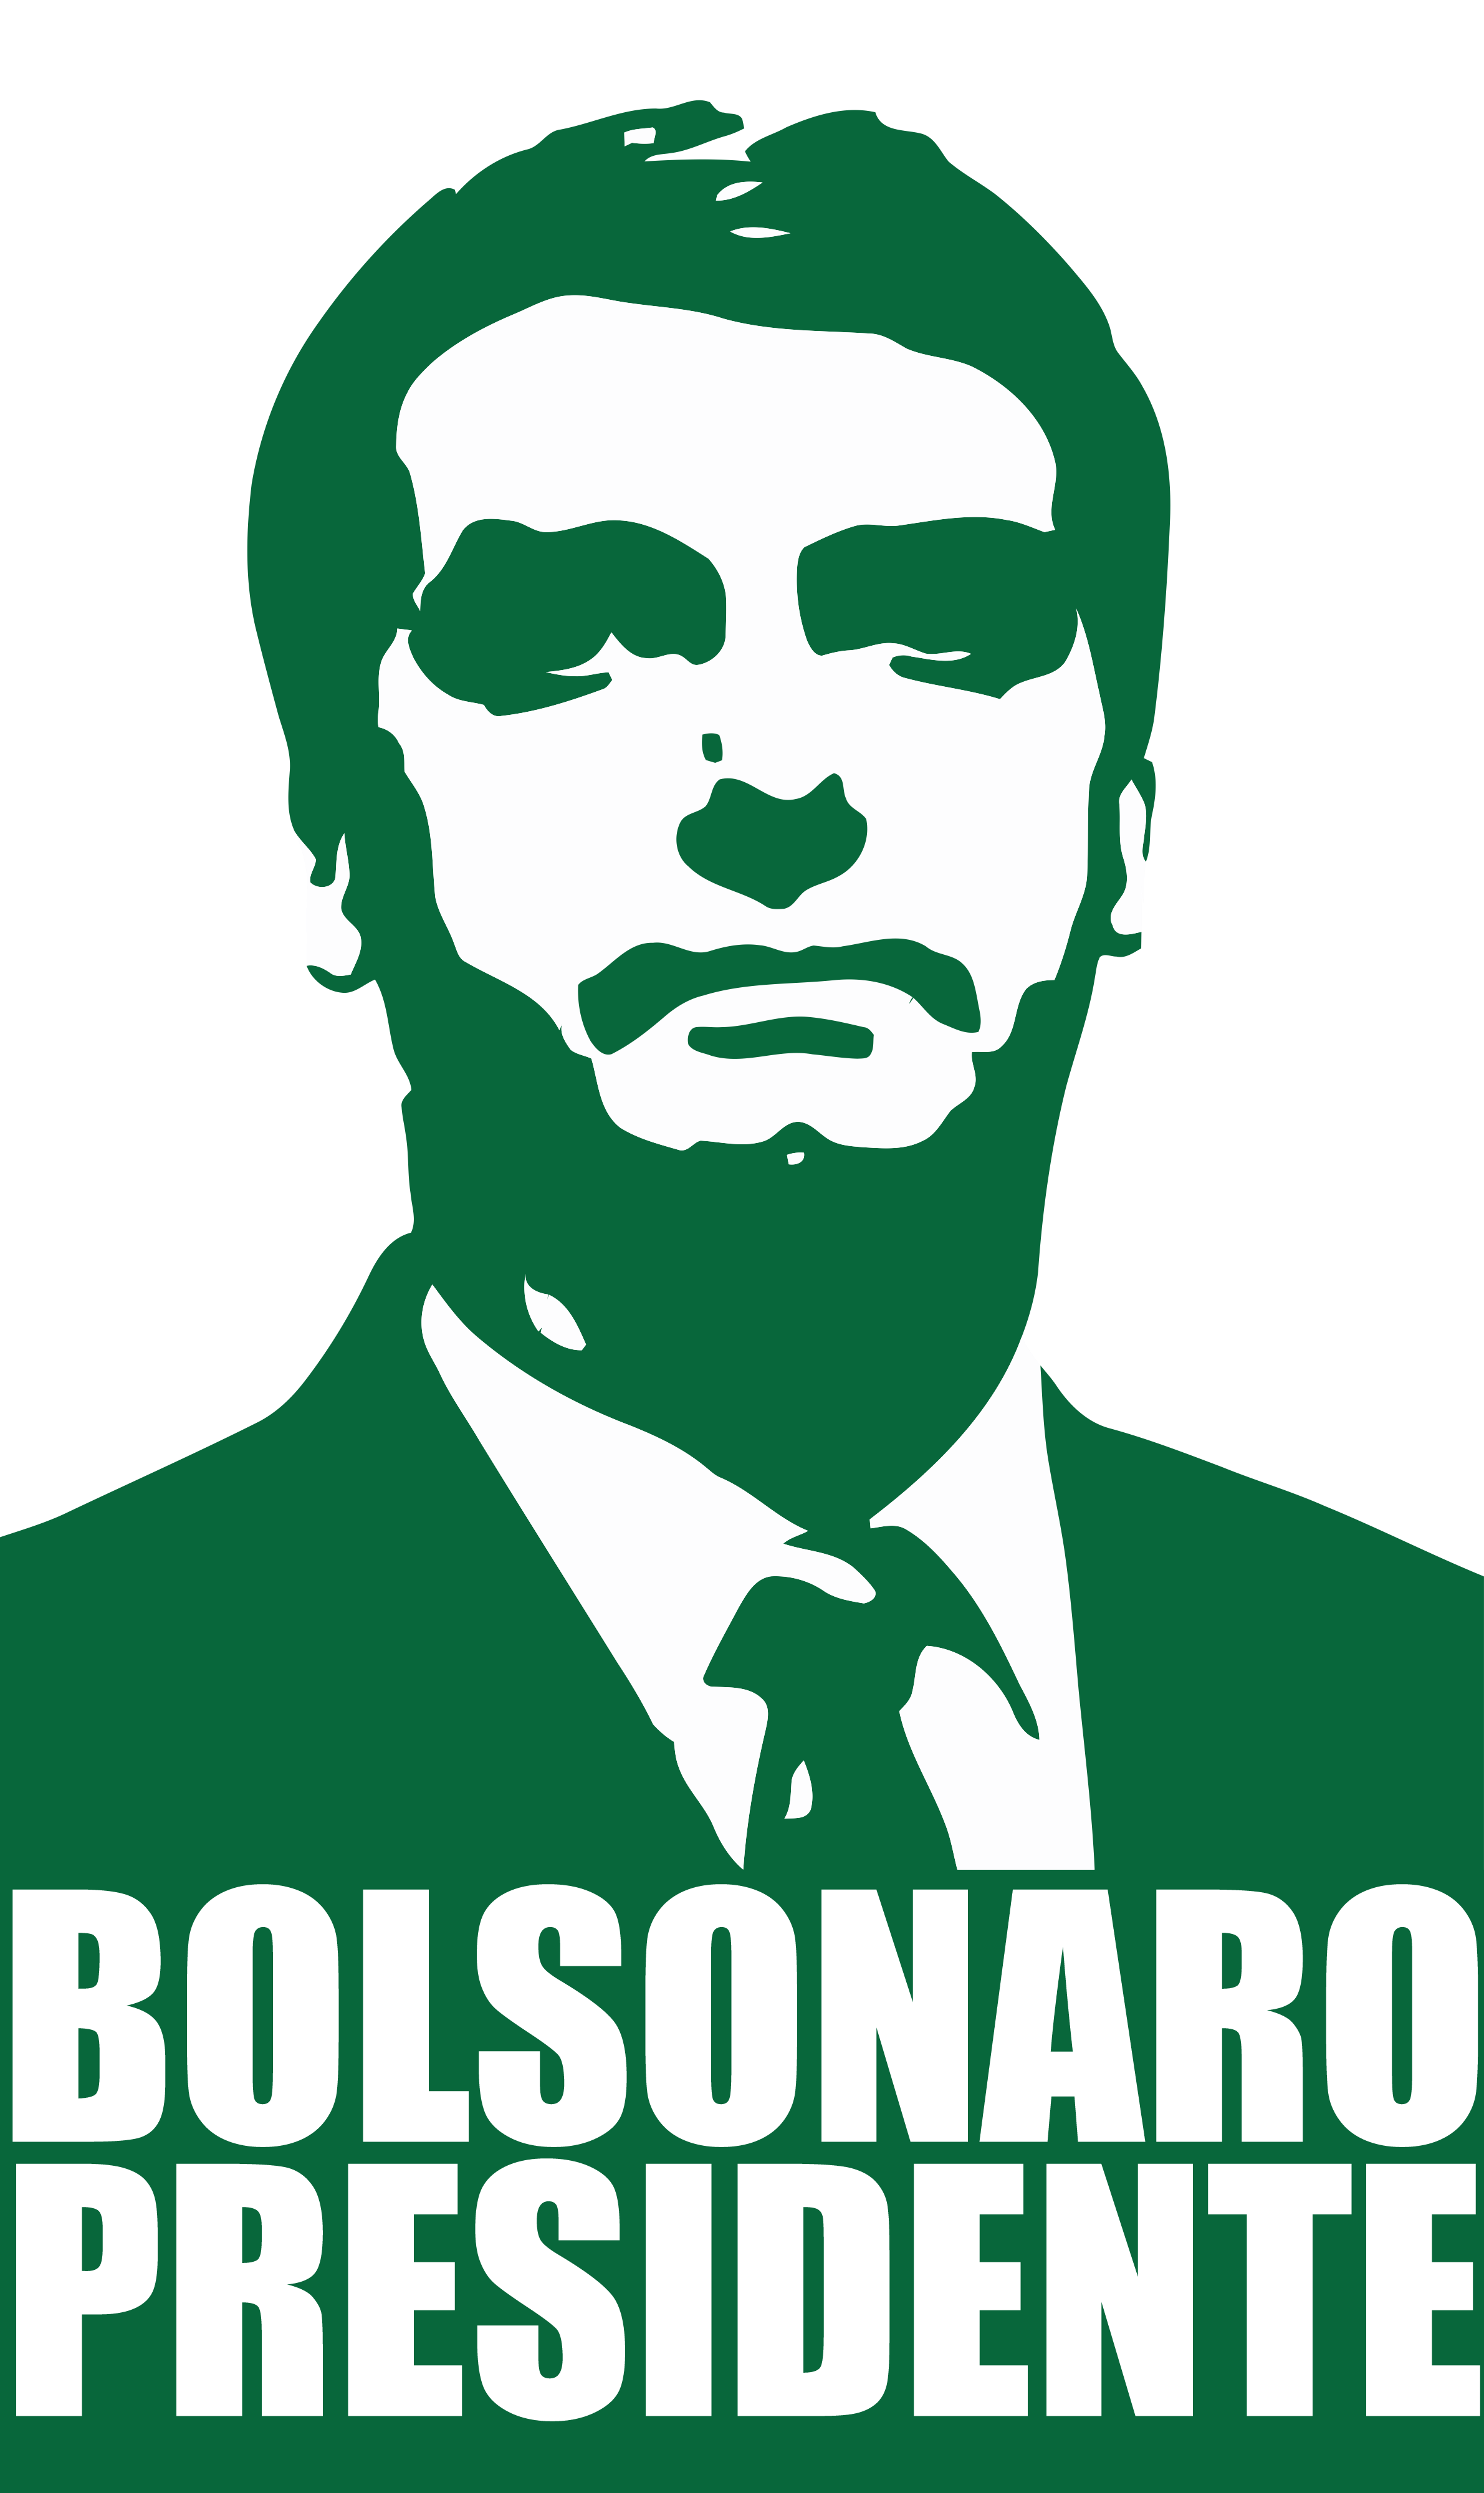 Imagem “Bolsonaro Presidente” vetorial e em alta resolução